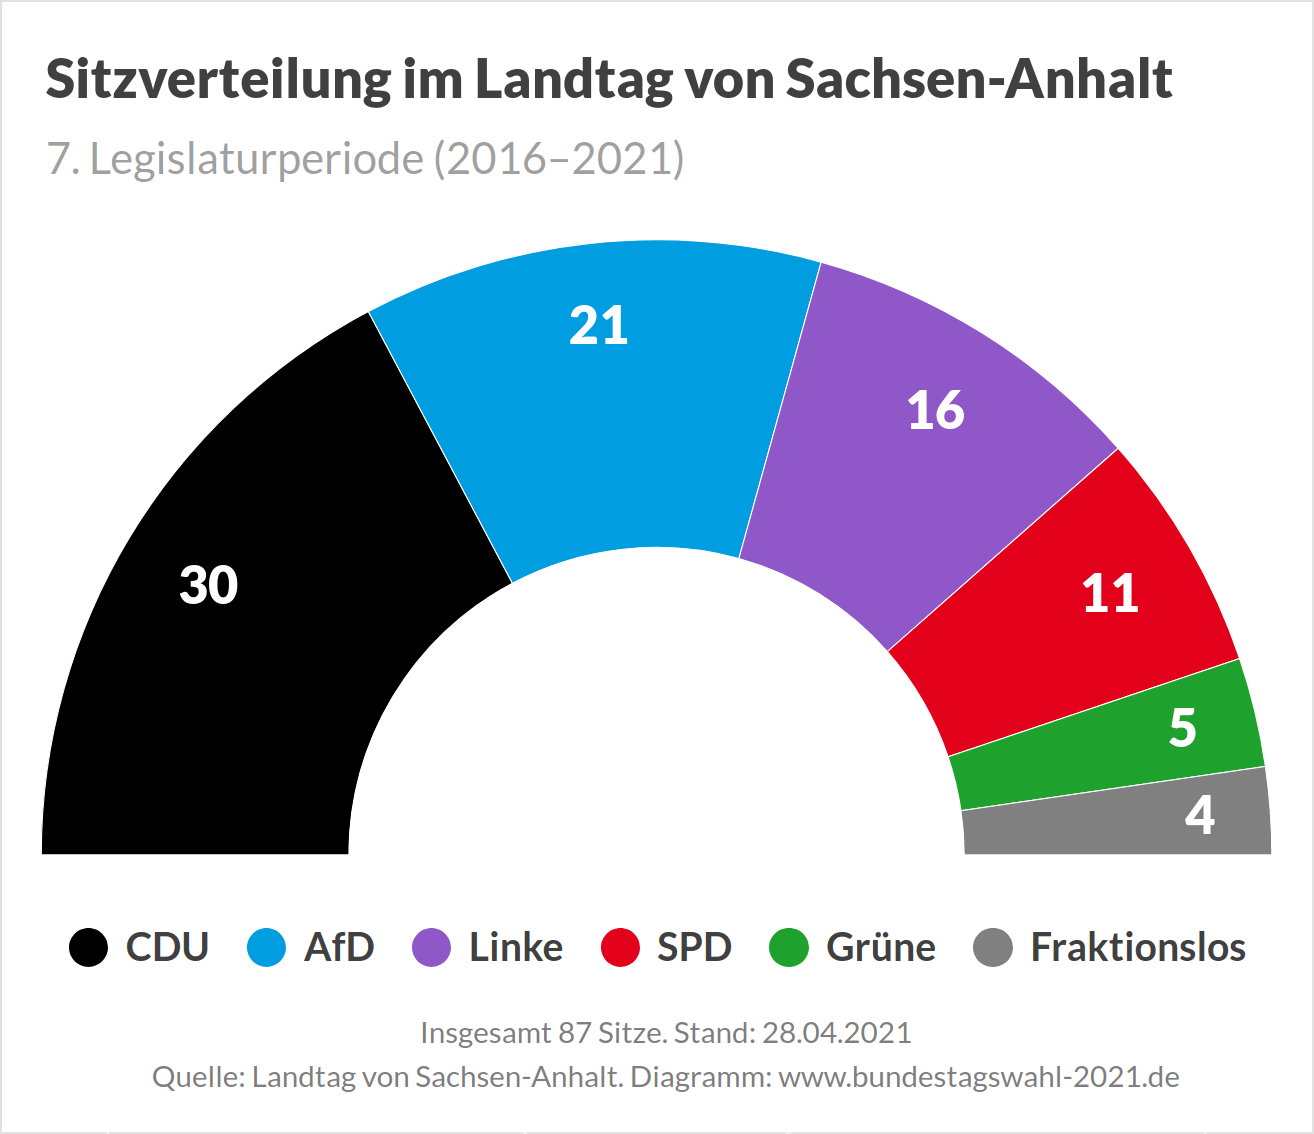 Sitzverteilung im Landtag von Sachsen-Anhalt vor der Landtagswahl 2021 (Ausgangslage)